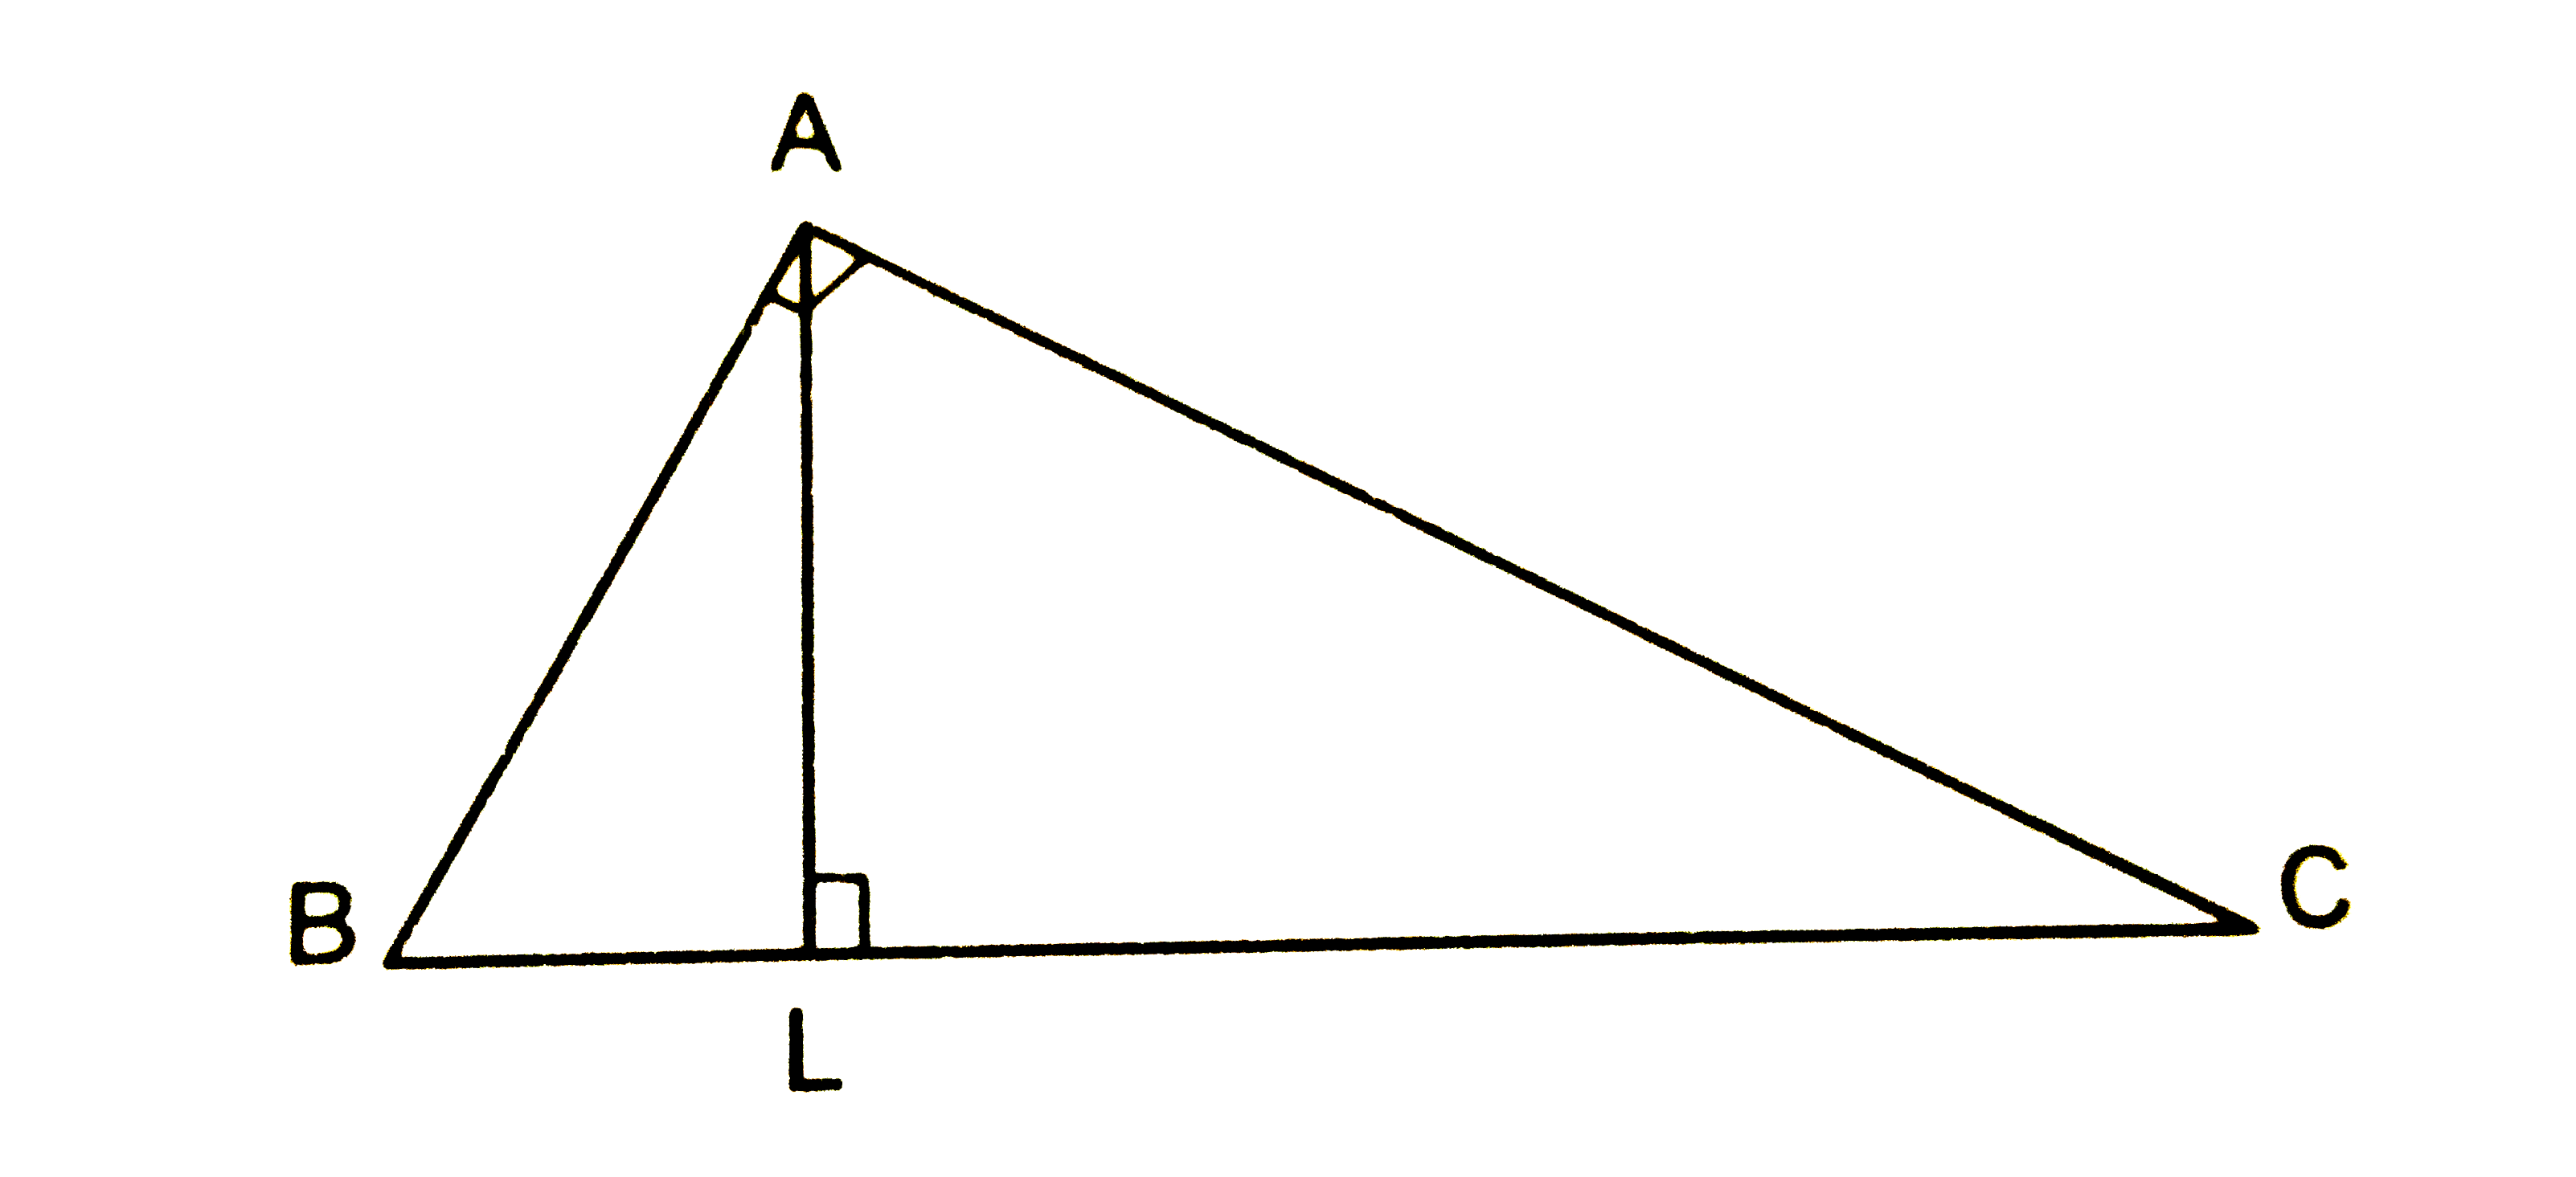 चित्र में, त्रिभुज ABC  में angle A समकोण है तथा AL भुजा BC पर लम्ब है । सिद्ध कीजिए कि angle BAL = angle ACB है ।